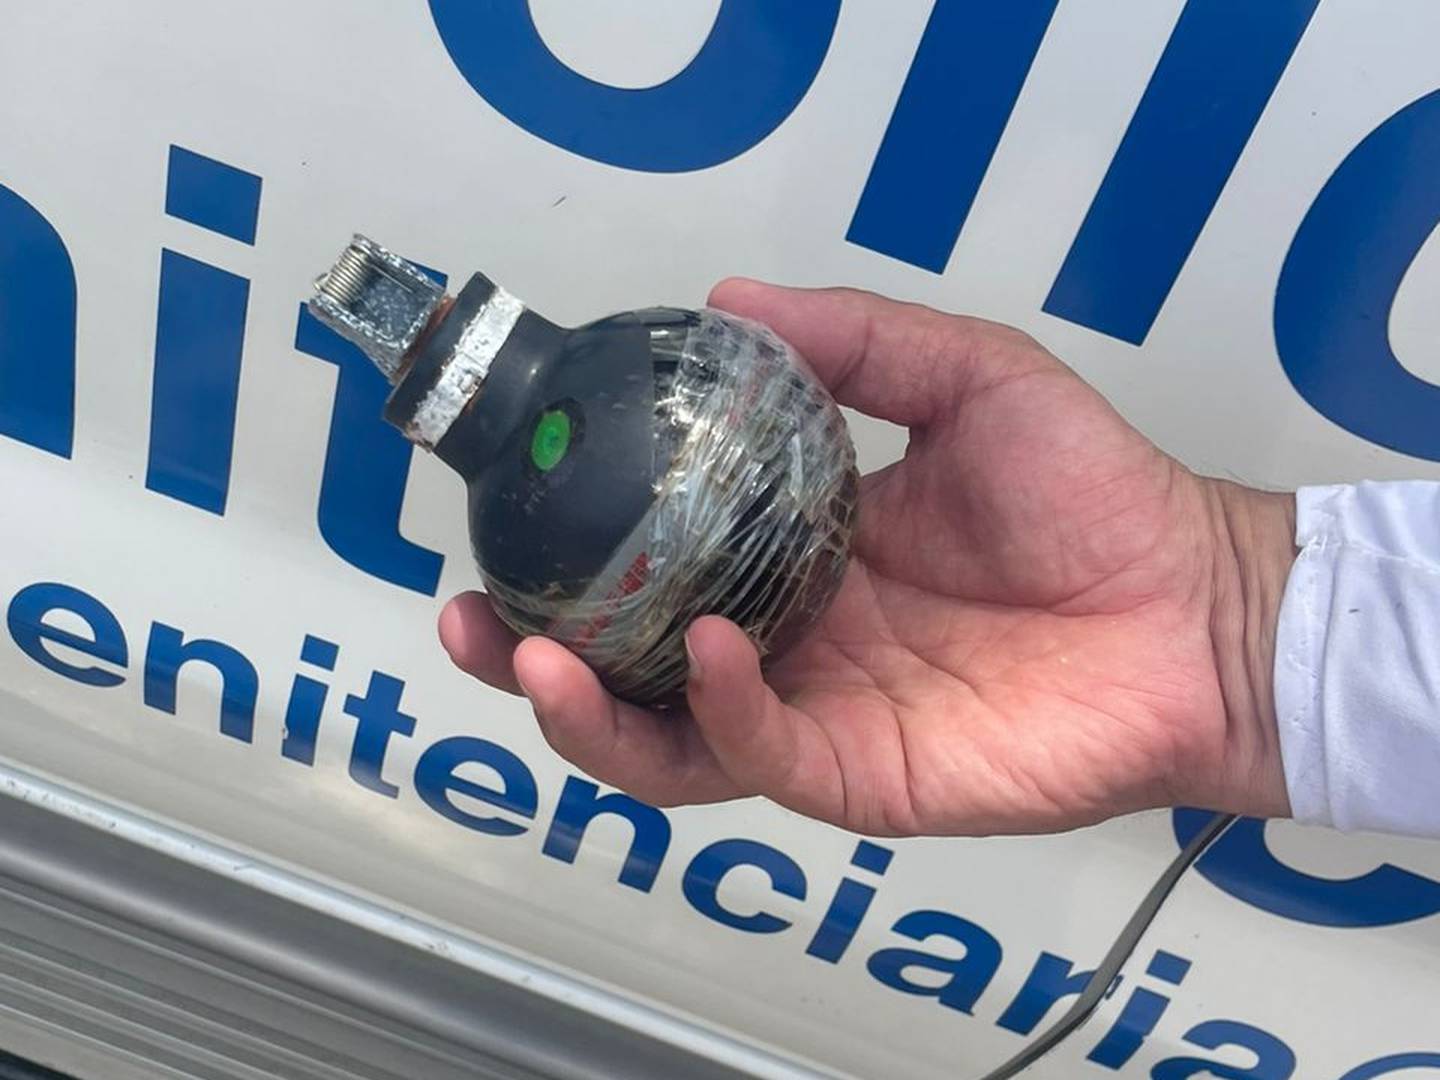 La granada fue encontrada por policías penitenciarios que realizaban un recorrido por el centro penal. Foto Ministerio de Justicia.